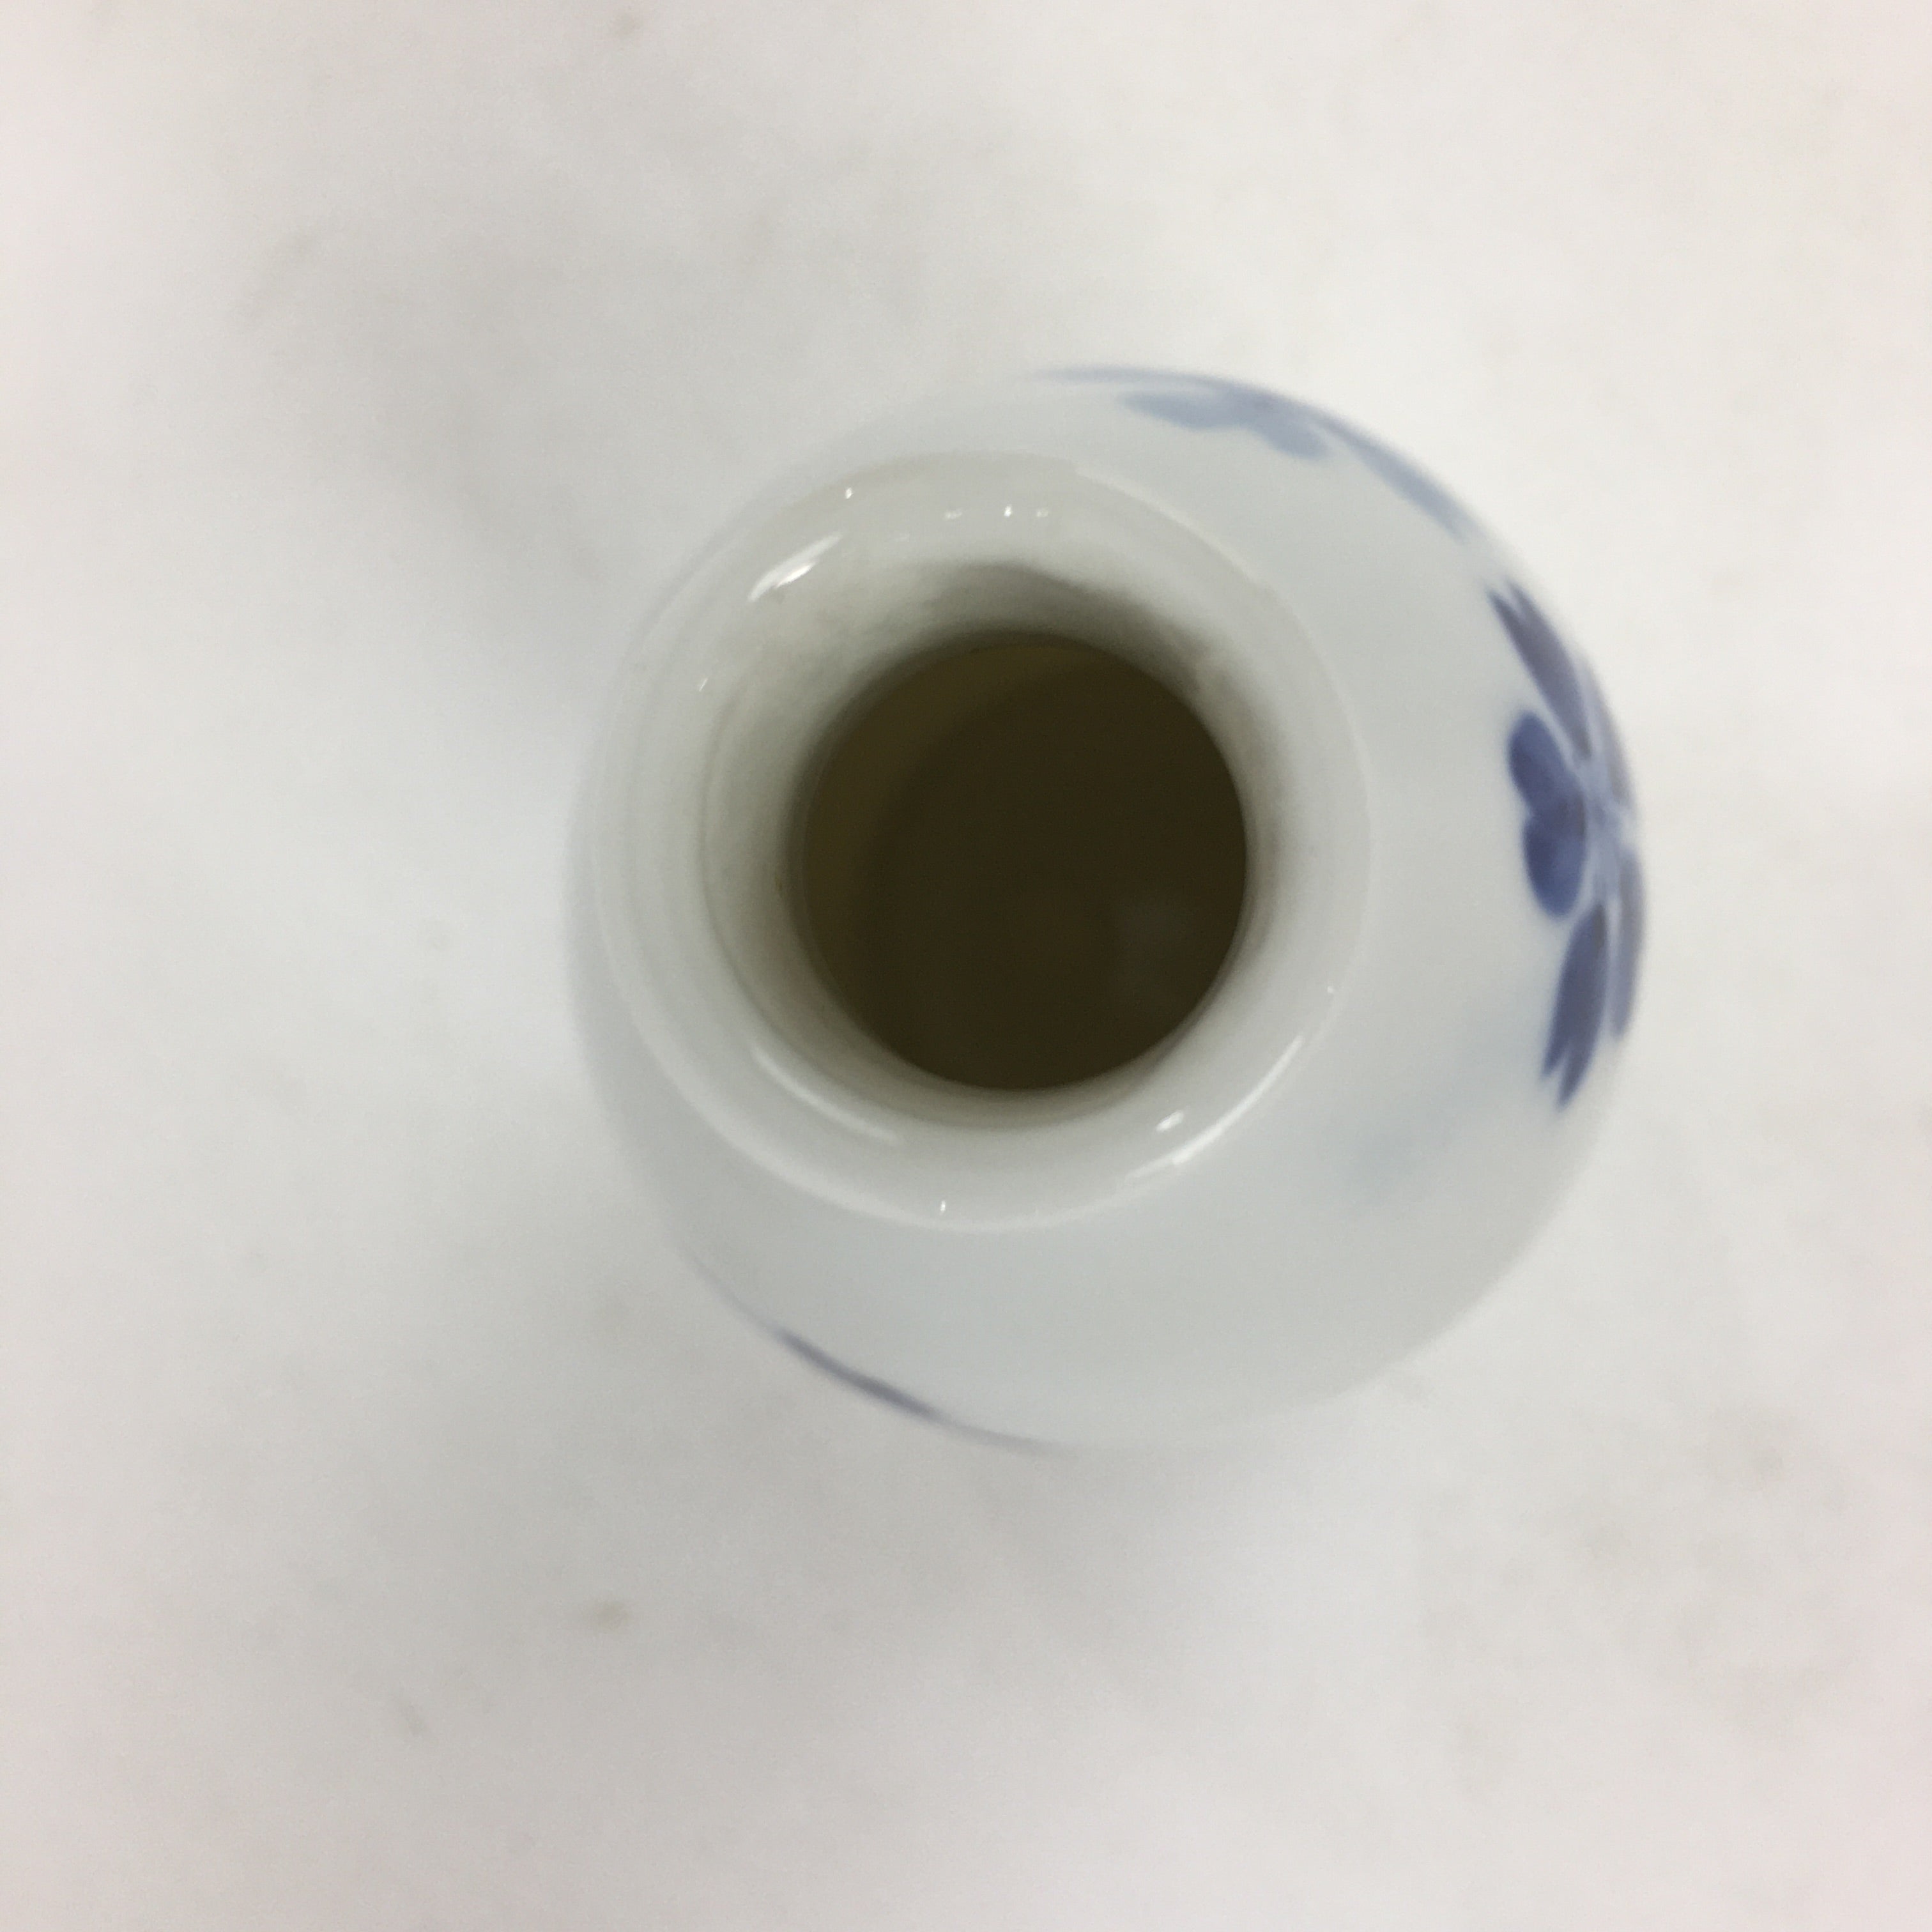 Japanese Porcelain Sake Bottle Vtg Cherry Blossom Design White Tokkuri TS348